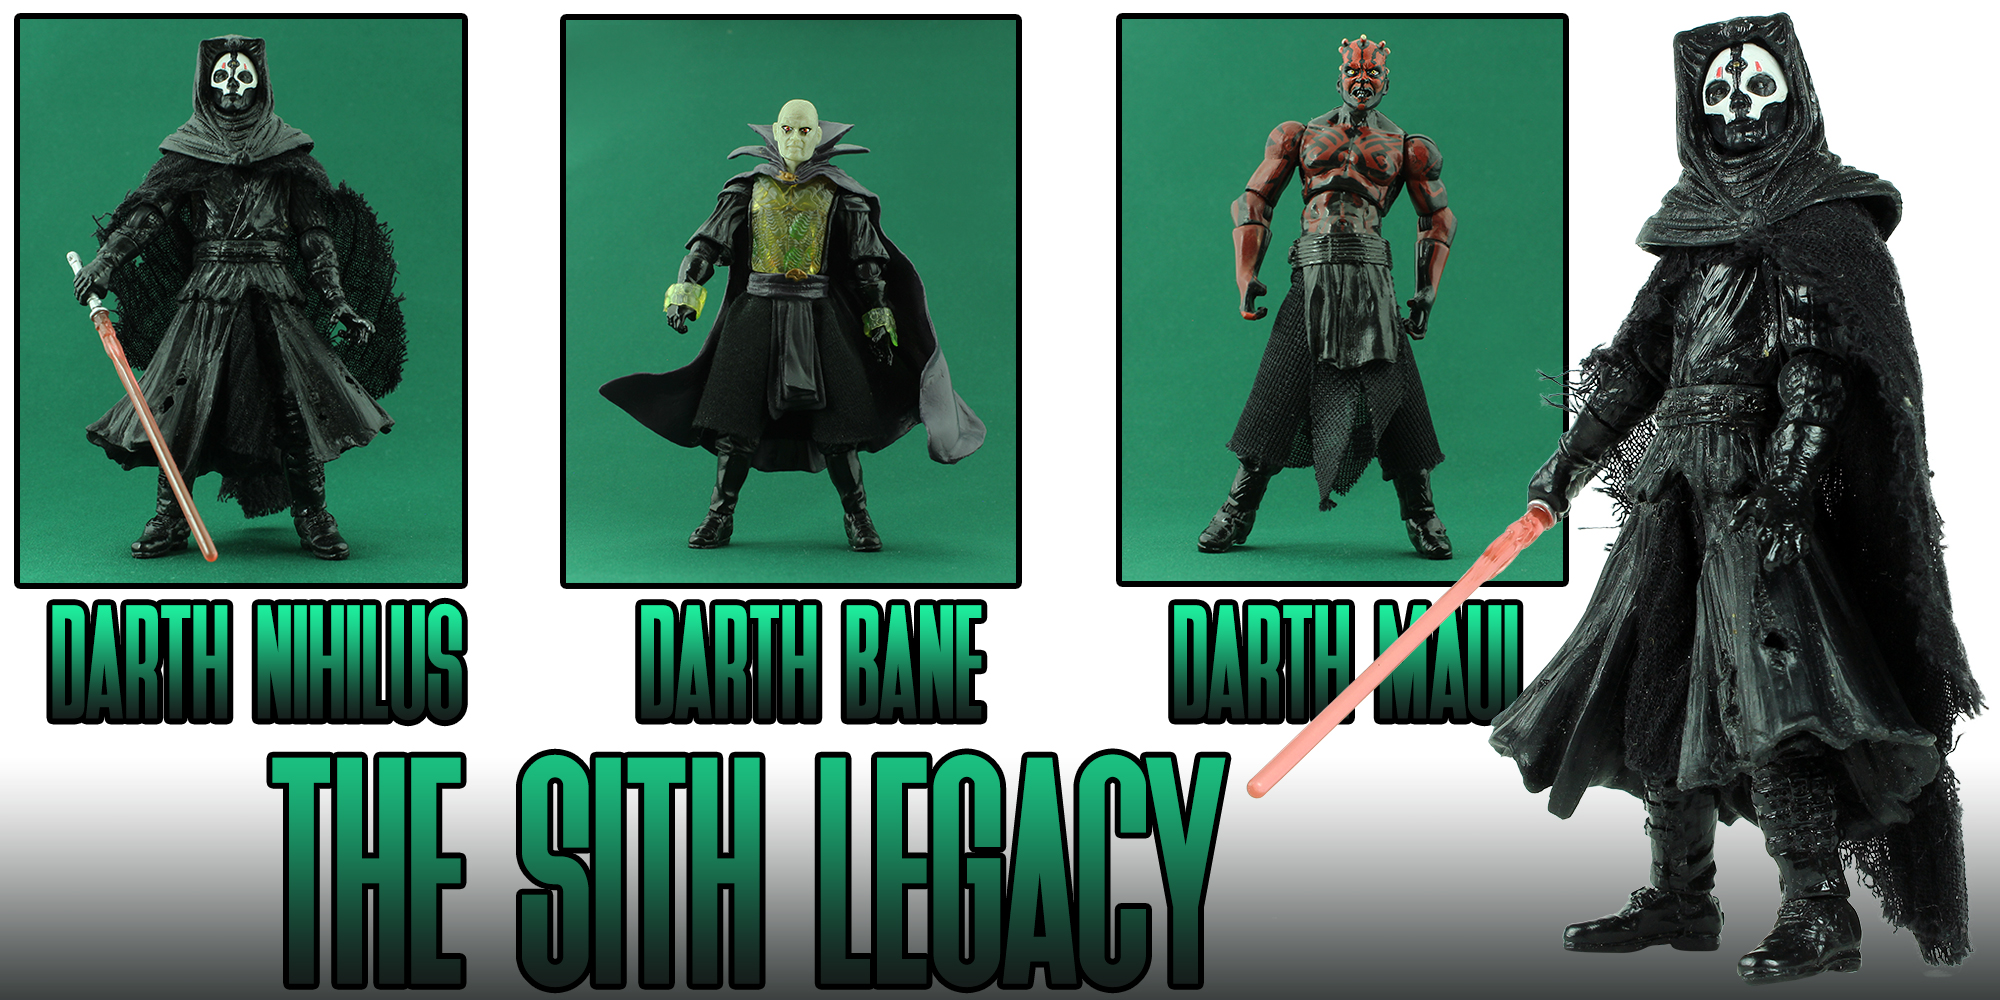 Sith Legacy